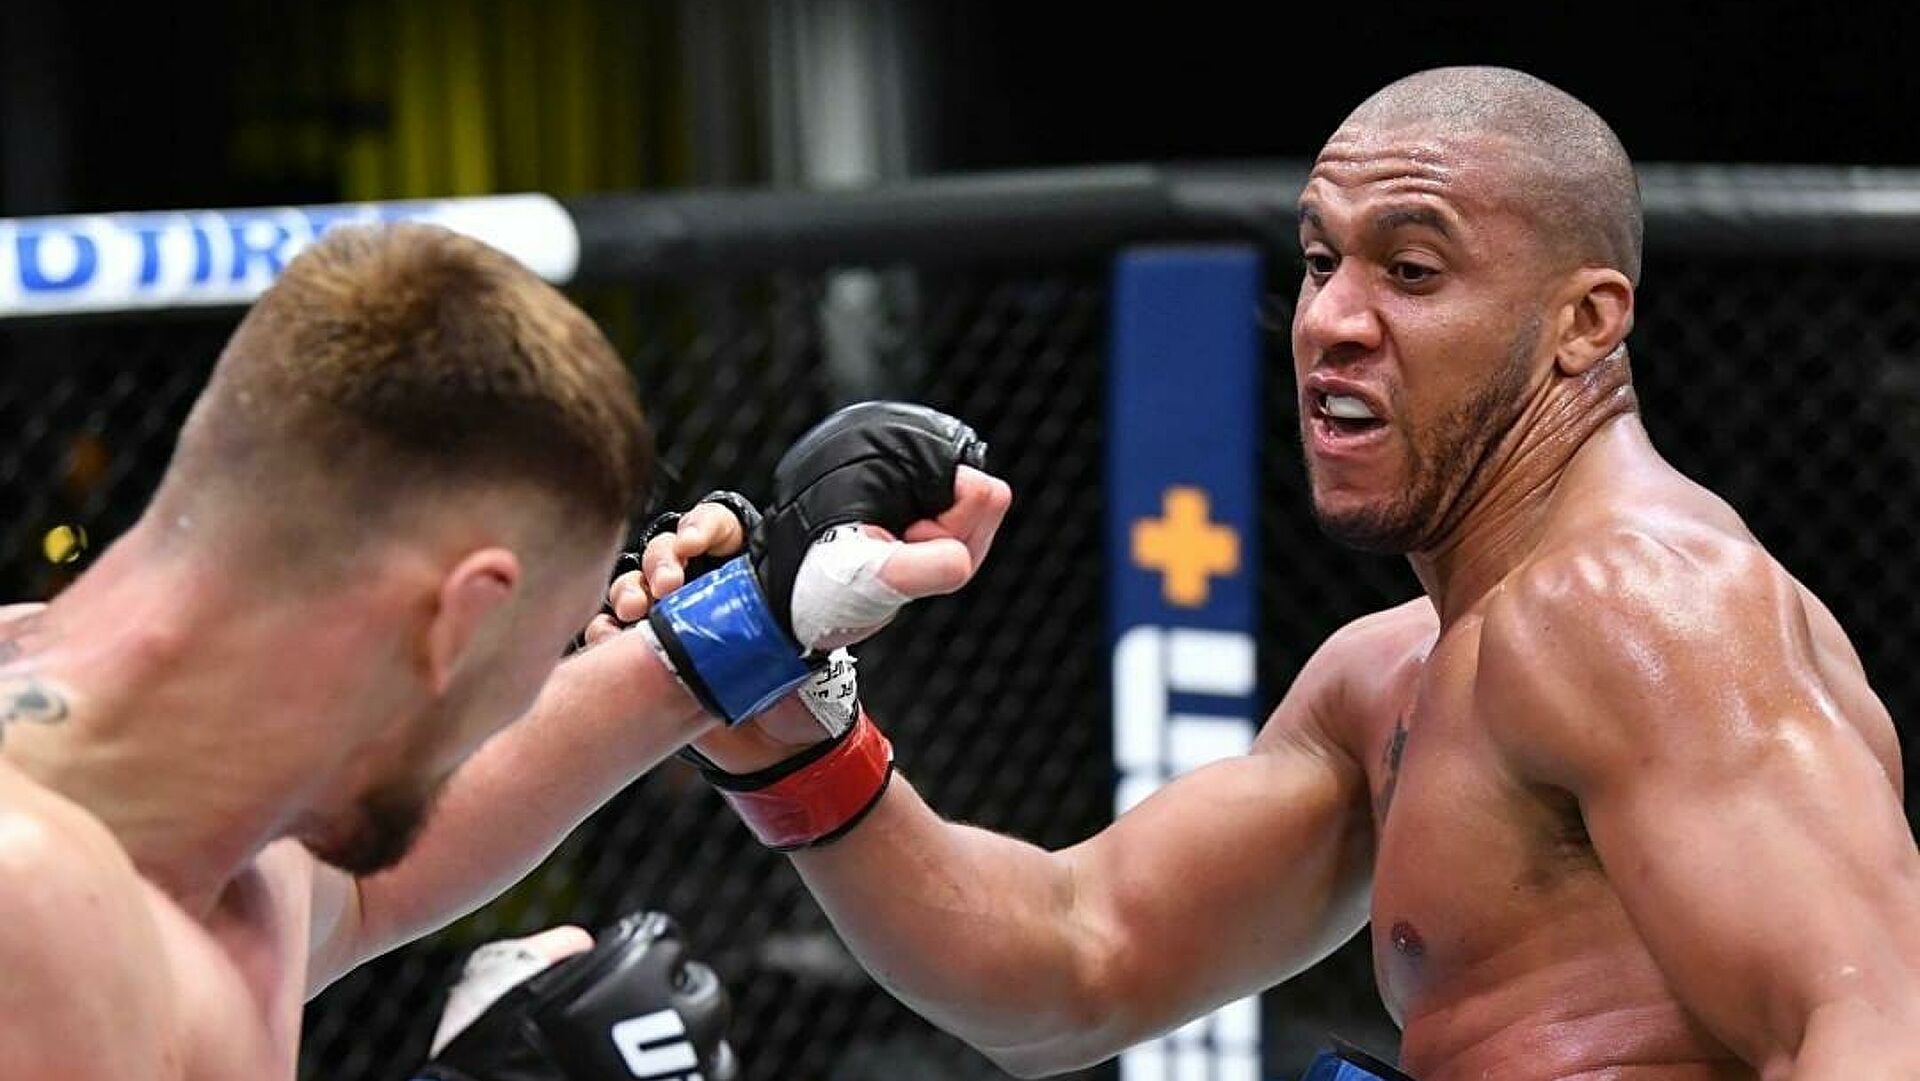 UFC официально анонсировал бой Льюис – Ган за титул временного чемпиона